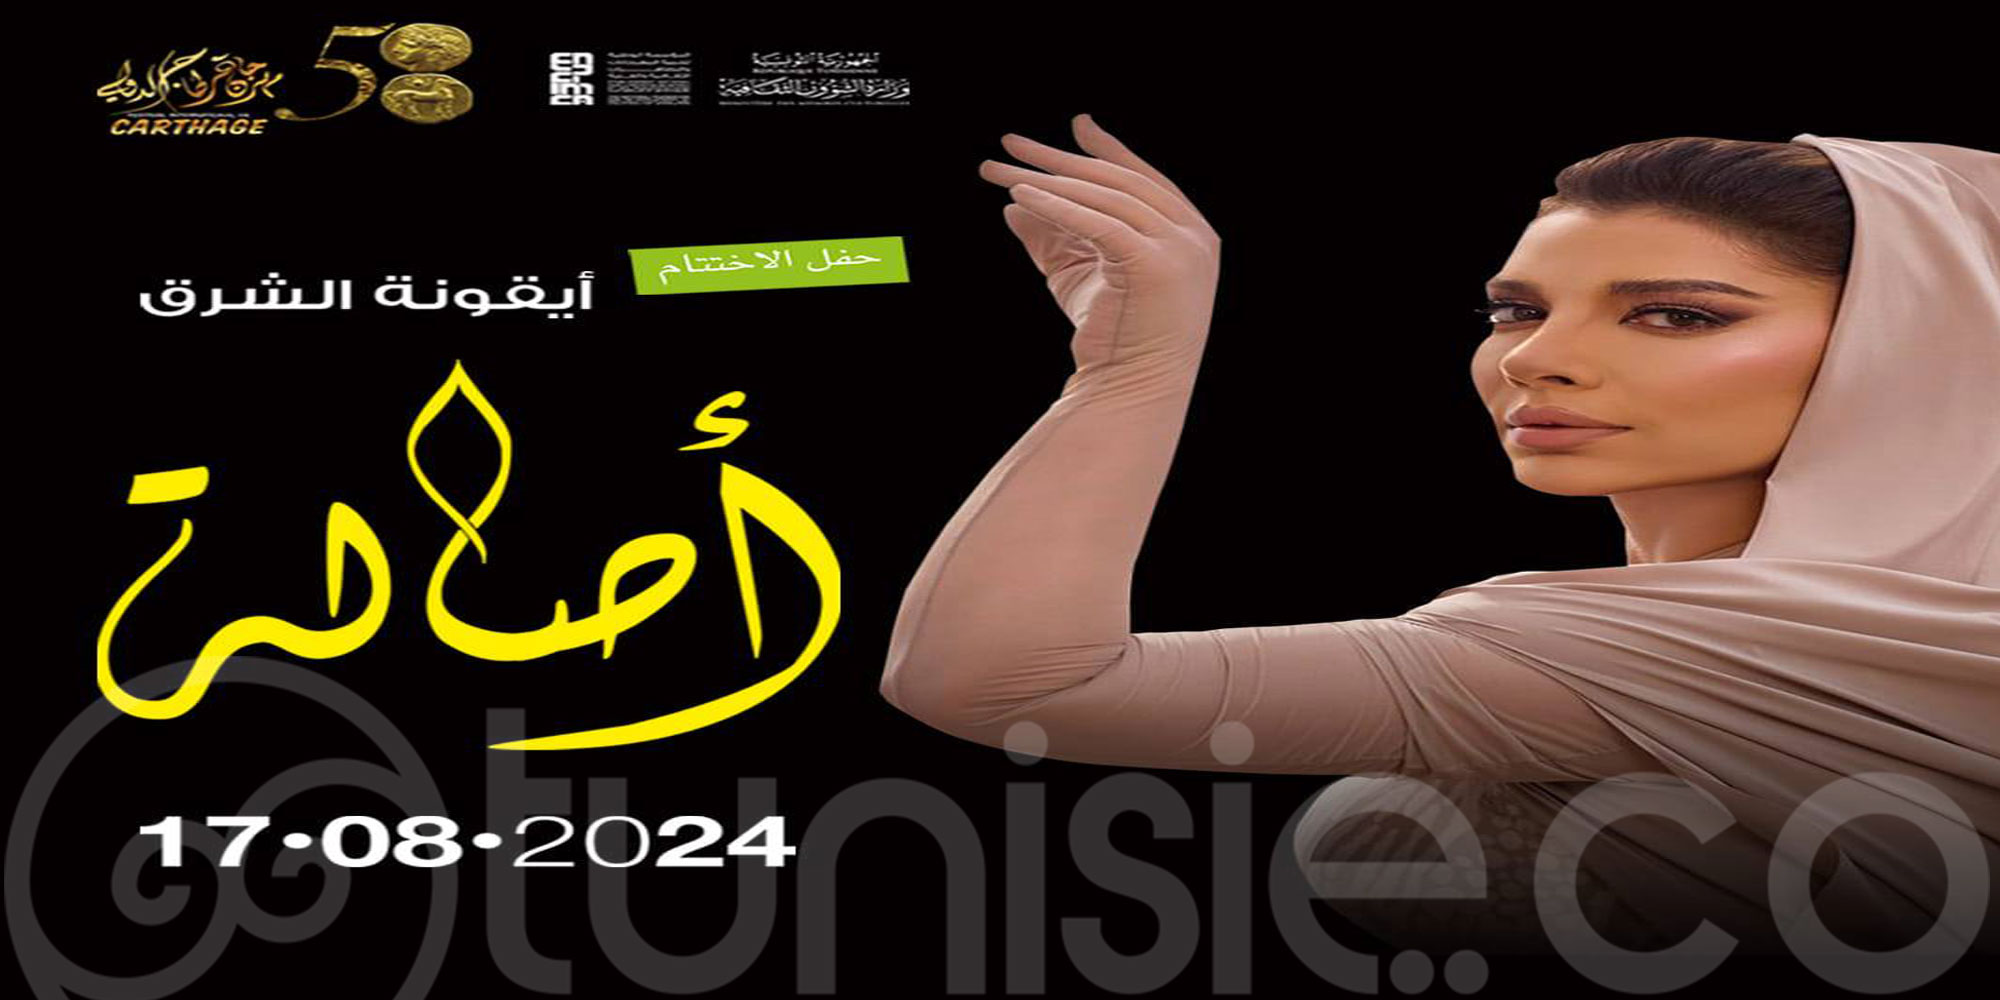 Concert Assala Nasri (Le retour) au Festival de Carthage le 17 Août 2024